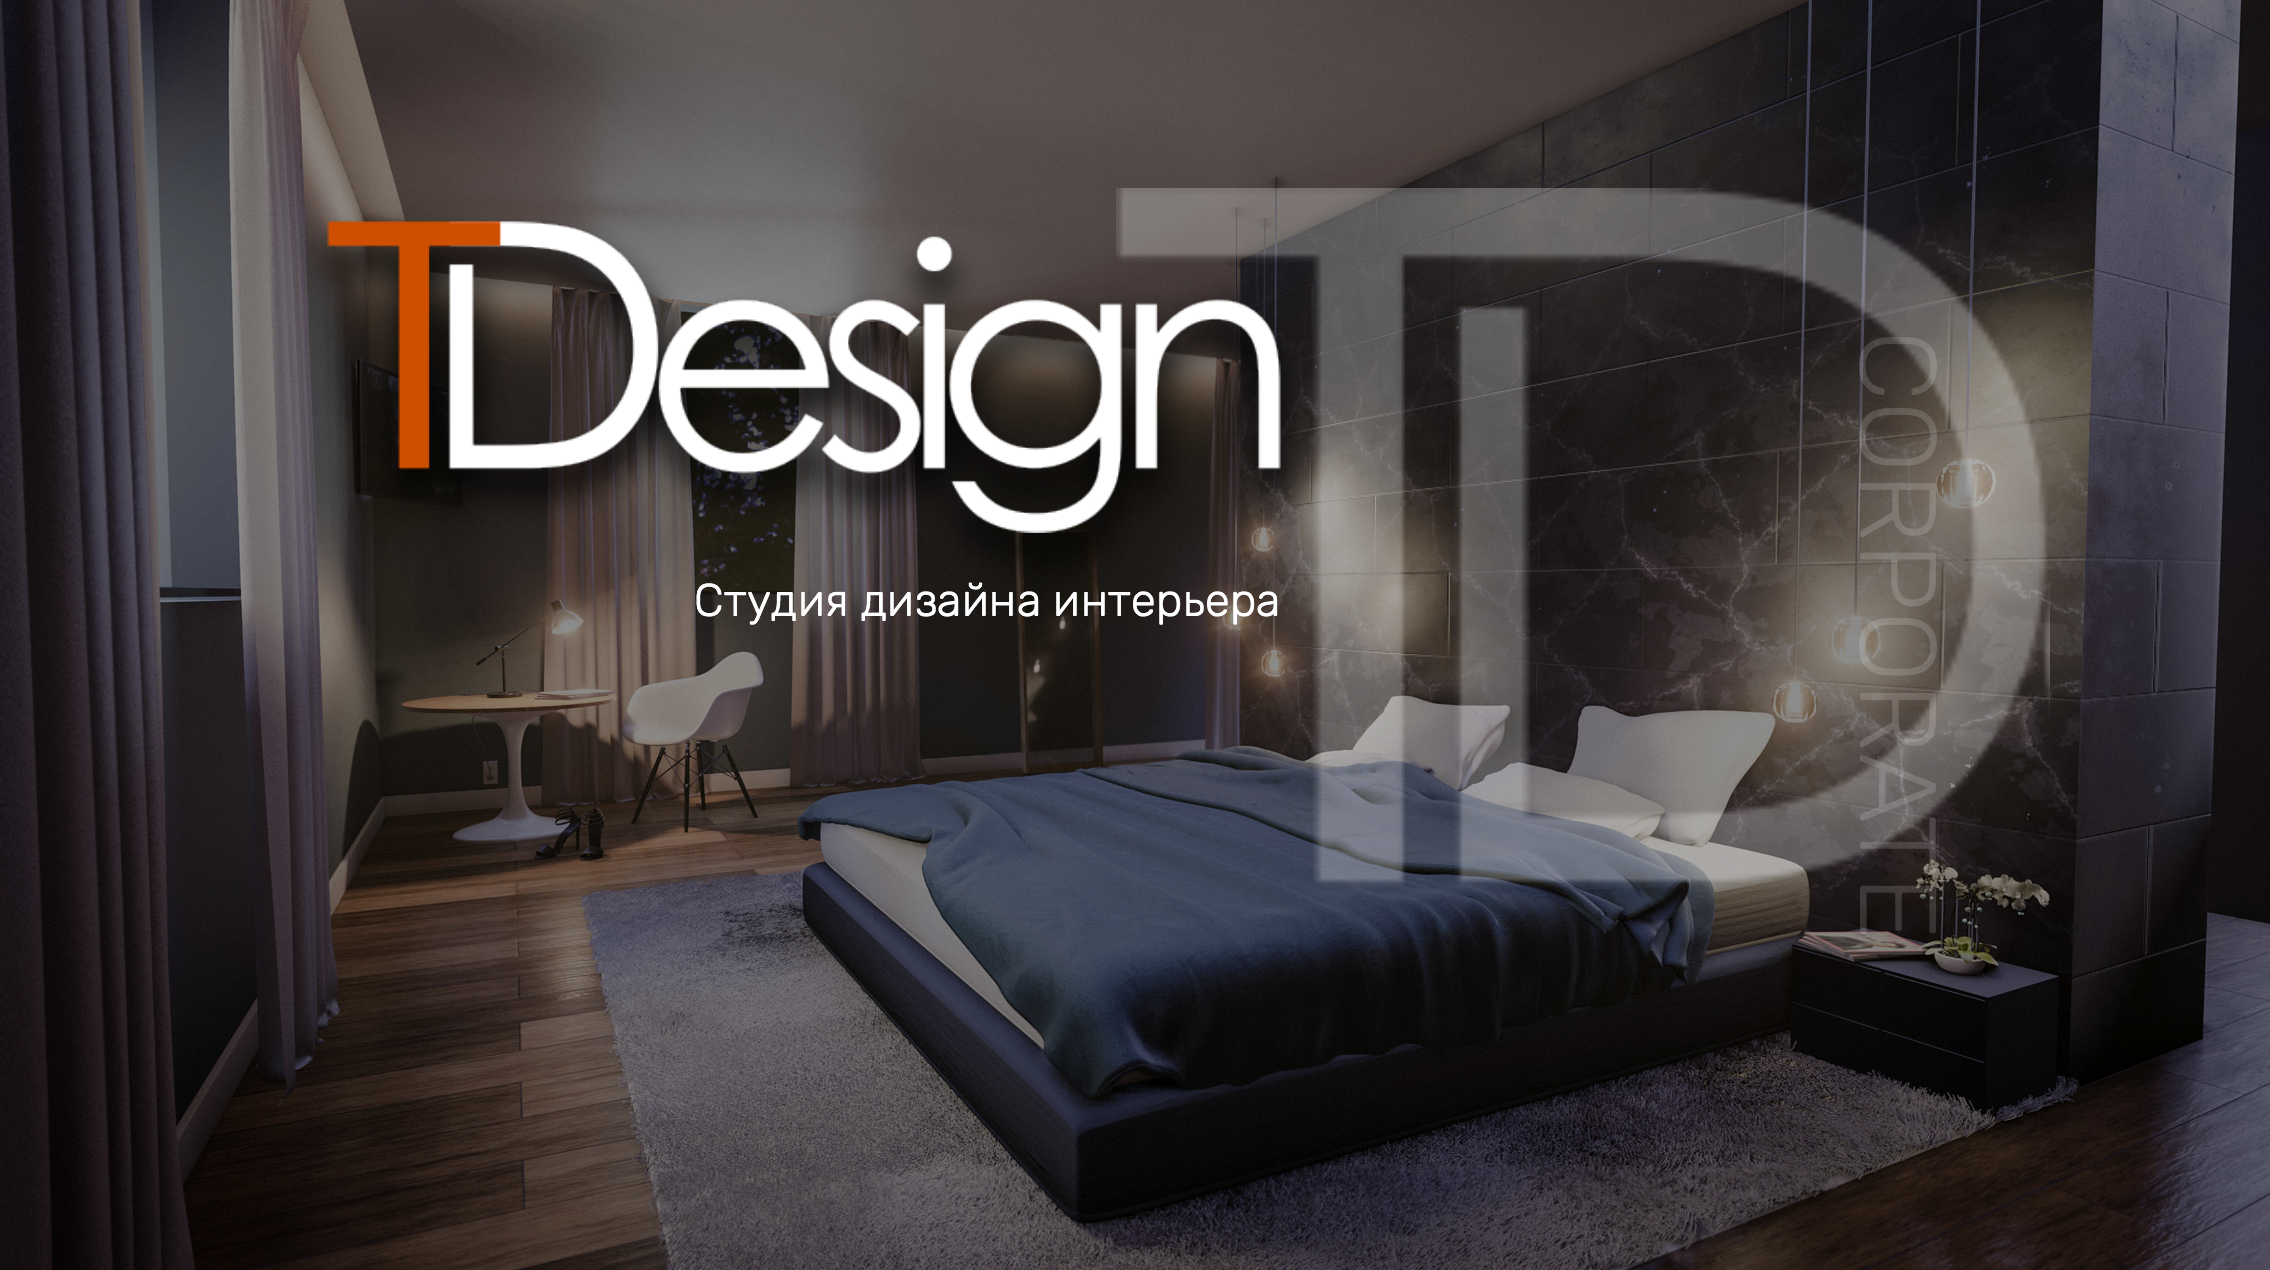 Створення корпоративного сайту T-Design